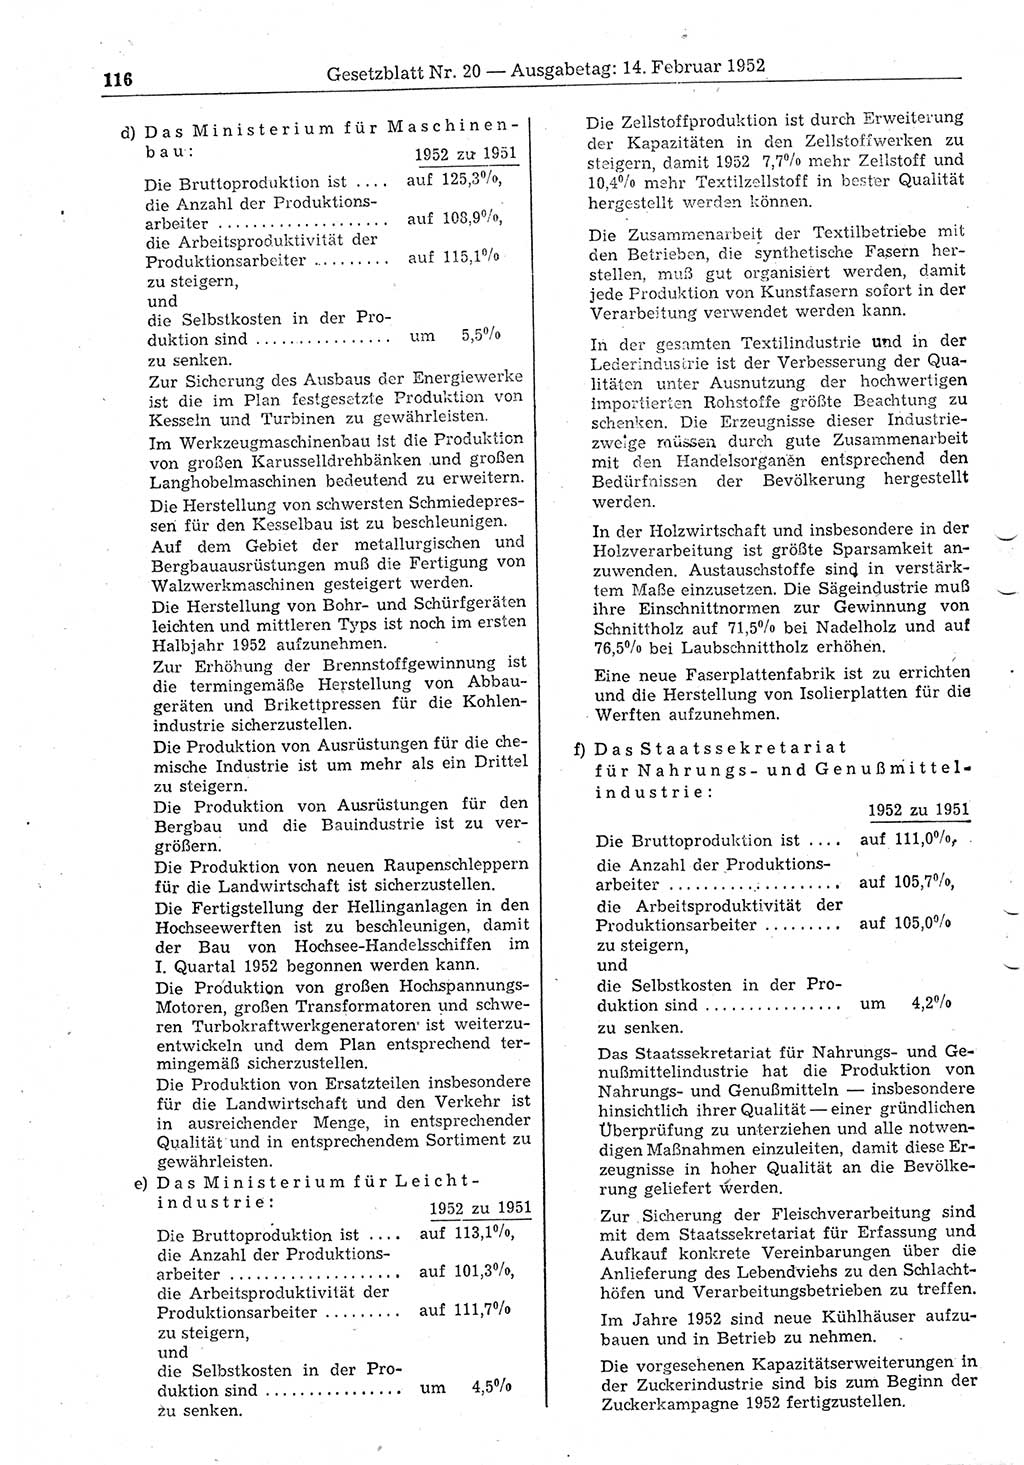 Gesetzblatt (GBl.) der Deutschen Demokratischen Republik (DDR) 1952, Seite 116 (GBl. DDR 1952, S. 116)